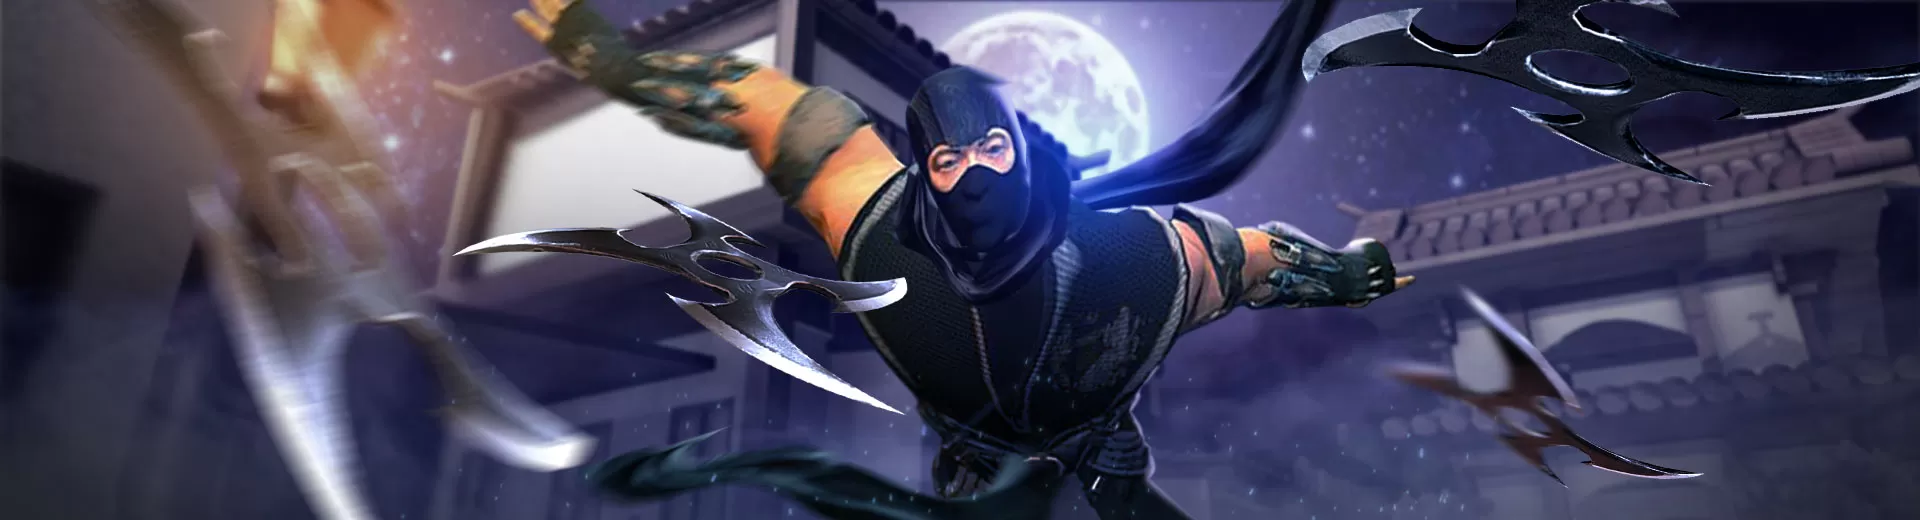 City Ninja Assassin Warrior 3d Emulator Pc 1